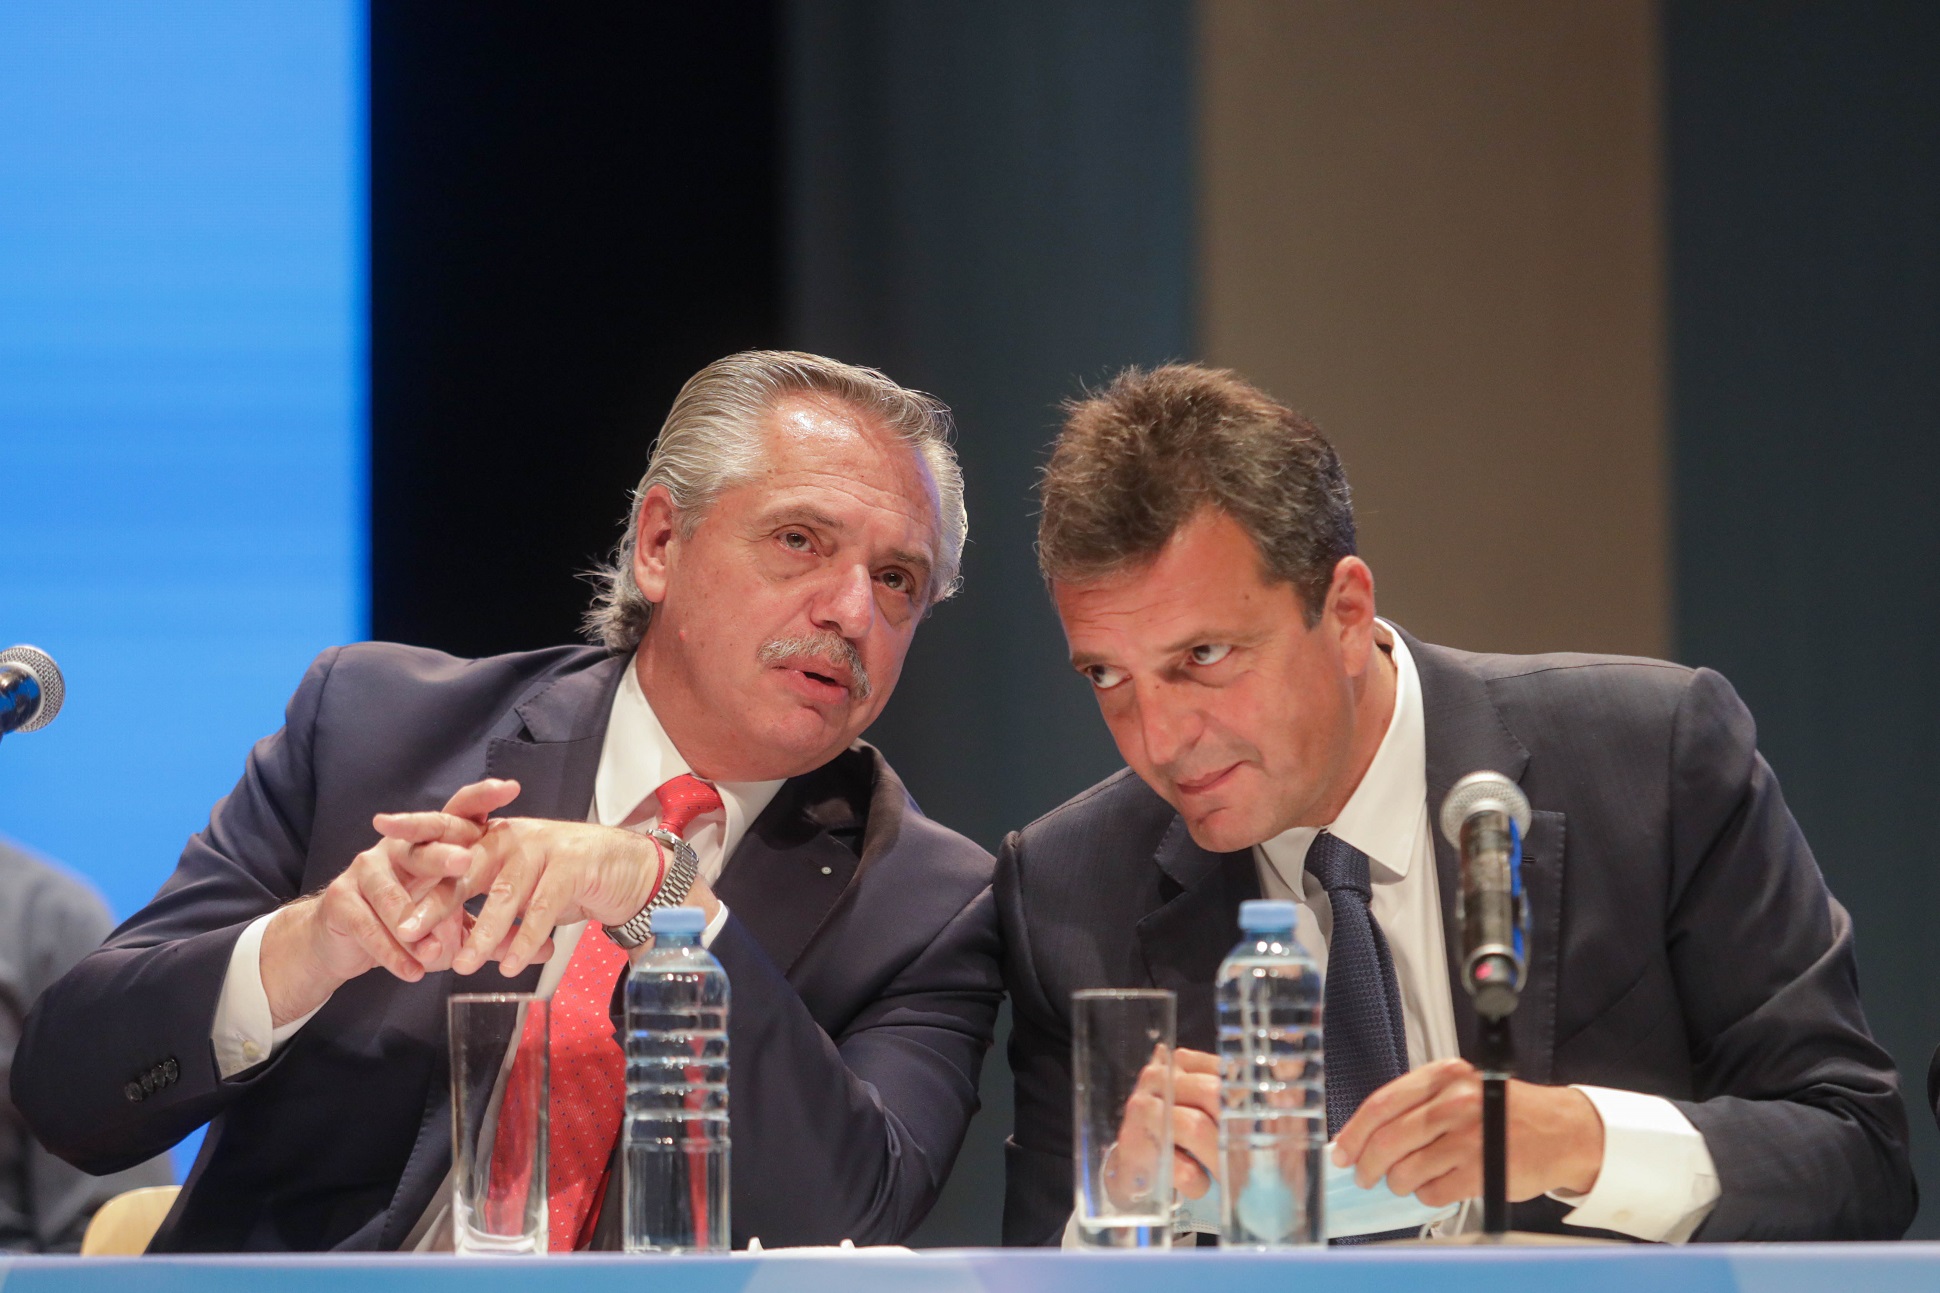 Alberto Fernández convocó a cambiar “la lógica especulativa” para que el crecimiento sea equilibrado y para todos